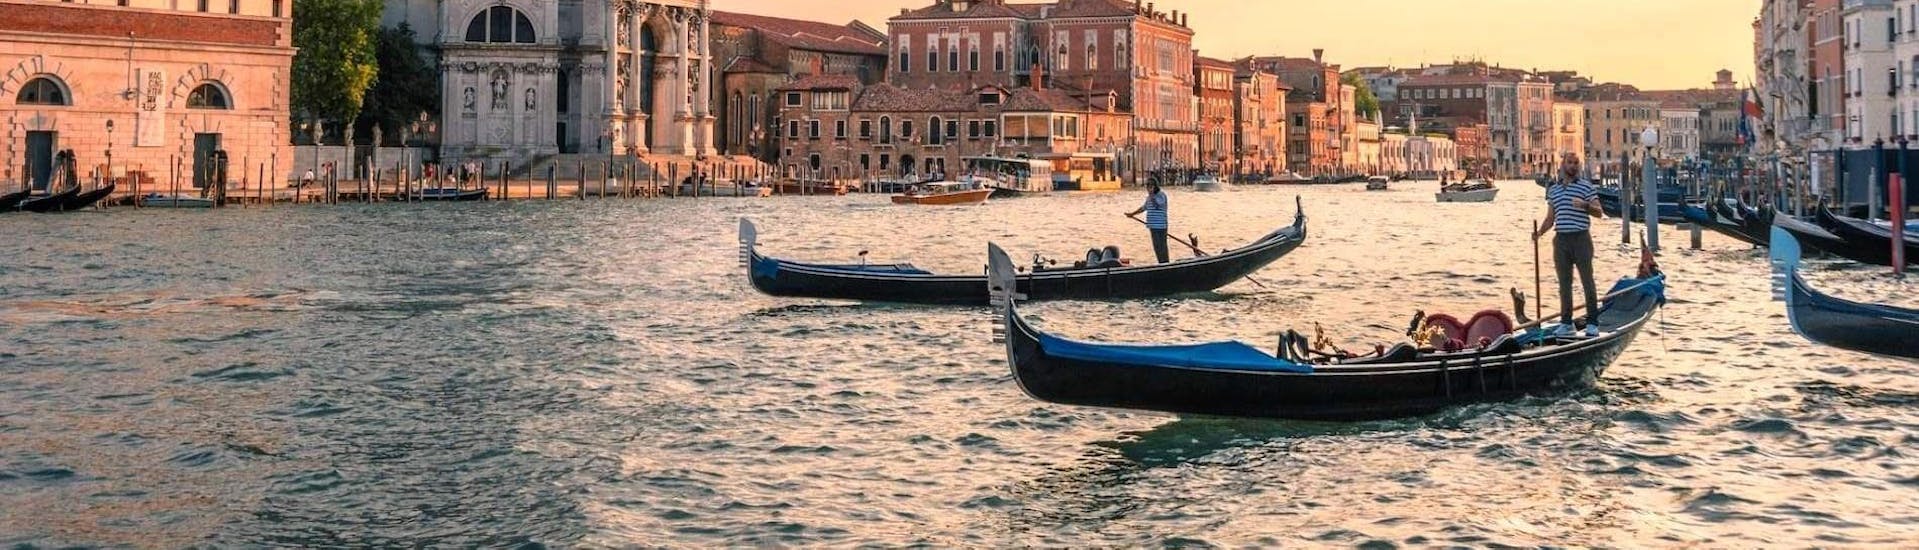 Gedeelde gondeltocht door de verborgen kanalen van Venetië.